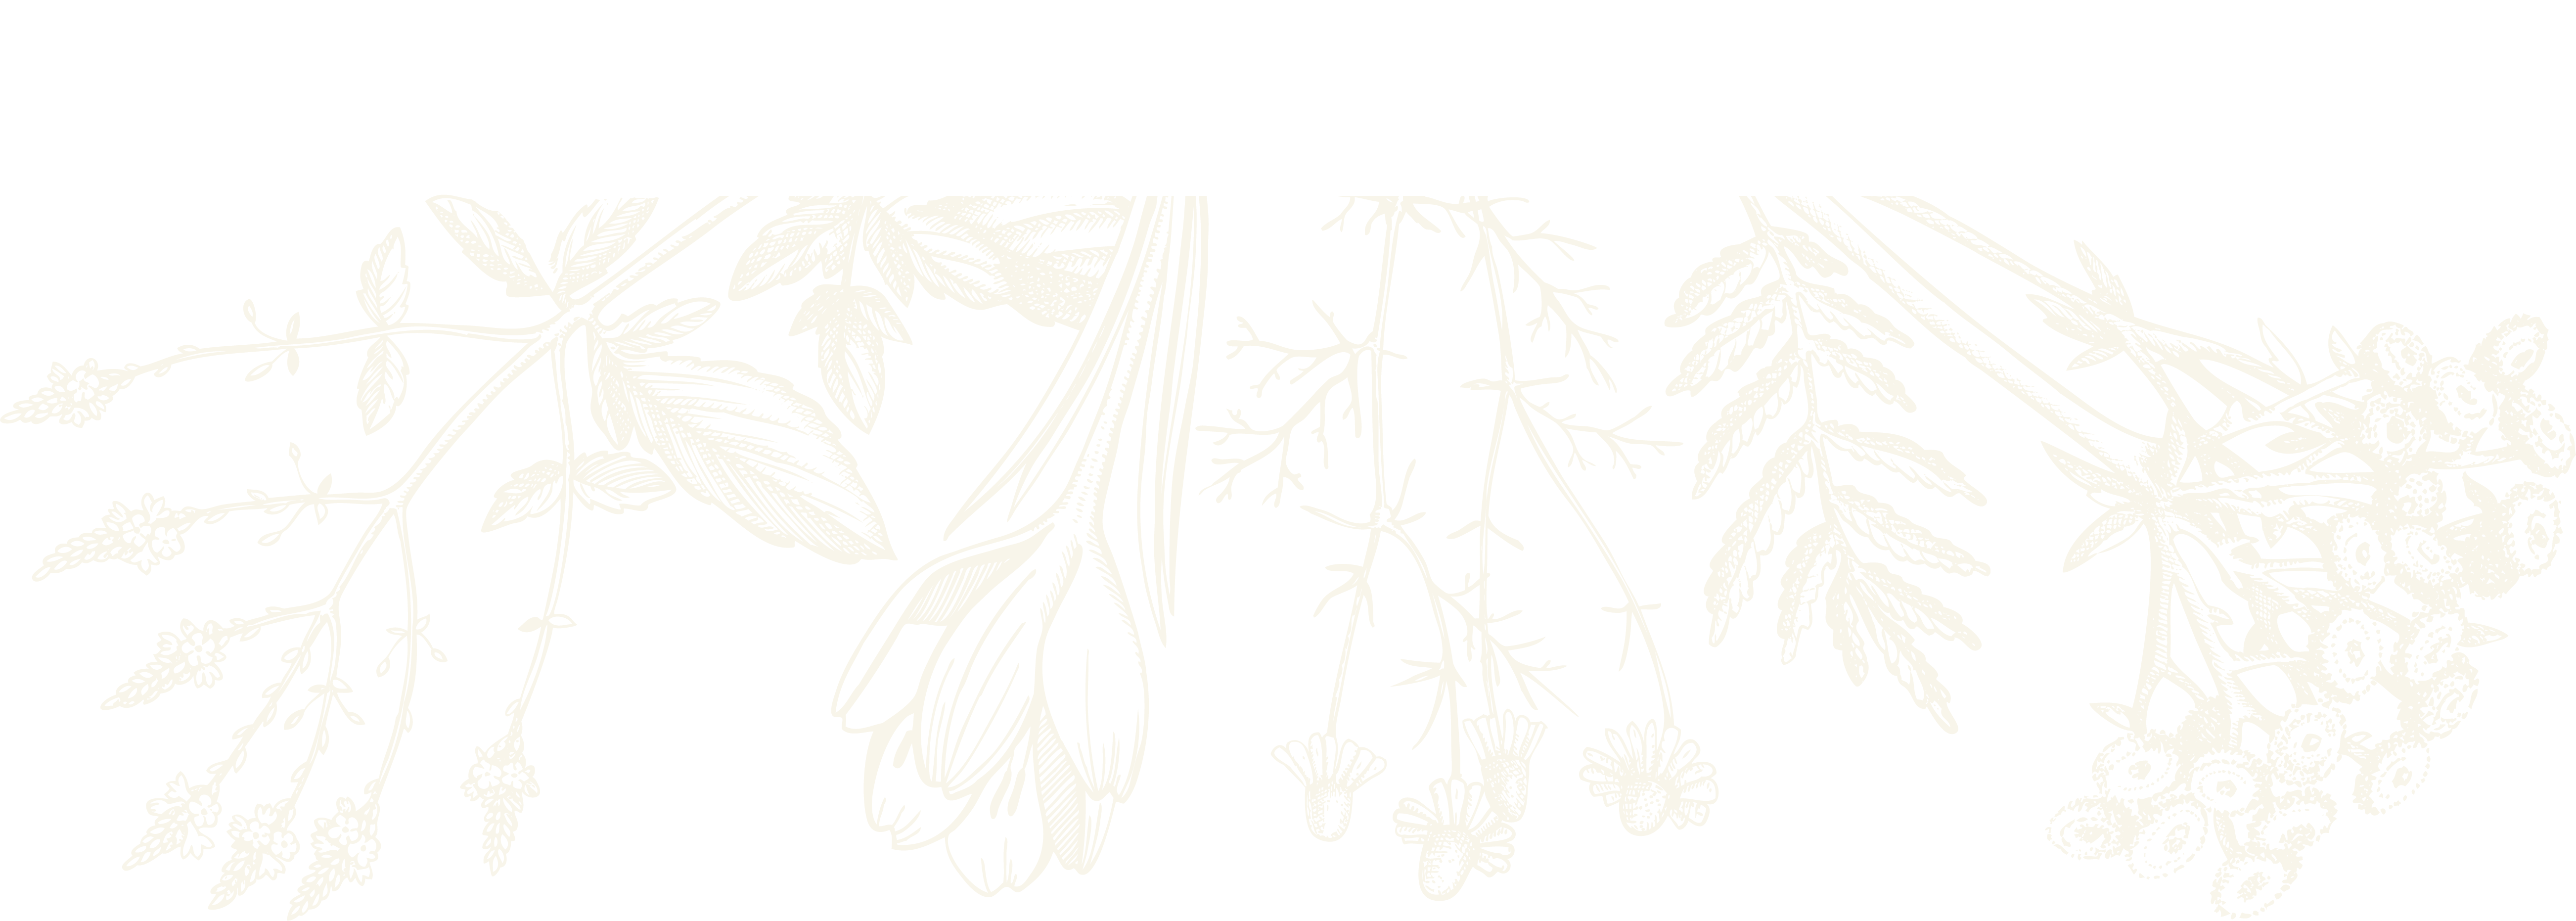 botanical sketch herbal medicine uk